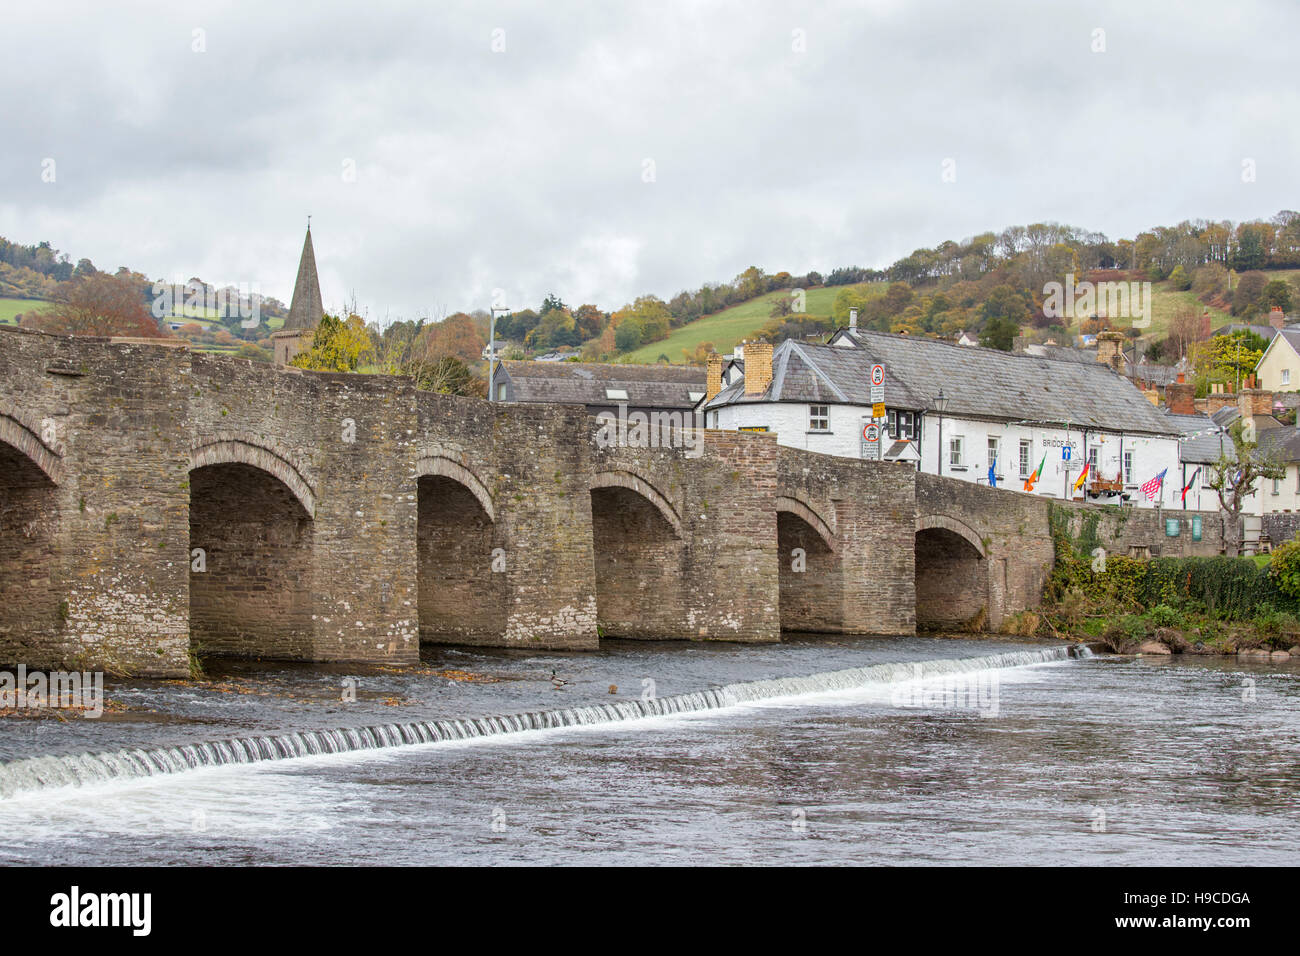 Le 18e siècle Crickhowell pont qui franchit la rivière Usk, le Parc National des Brecon Beacons, Powys, Pays de Galles, Royaume-Uni Banque D'Images